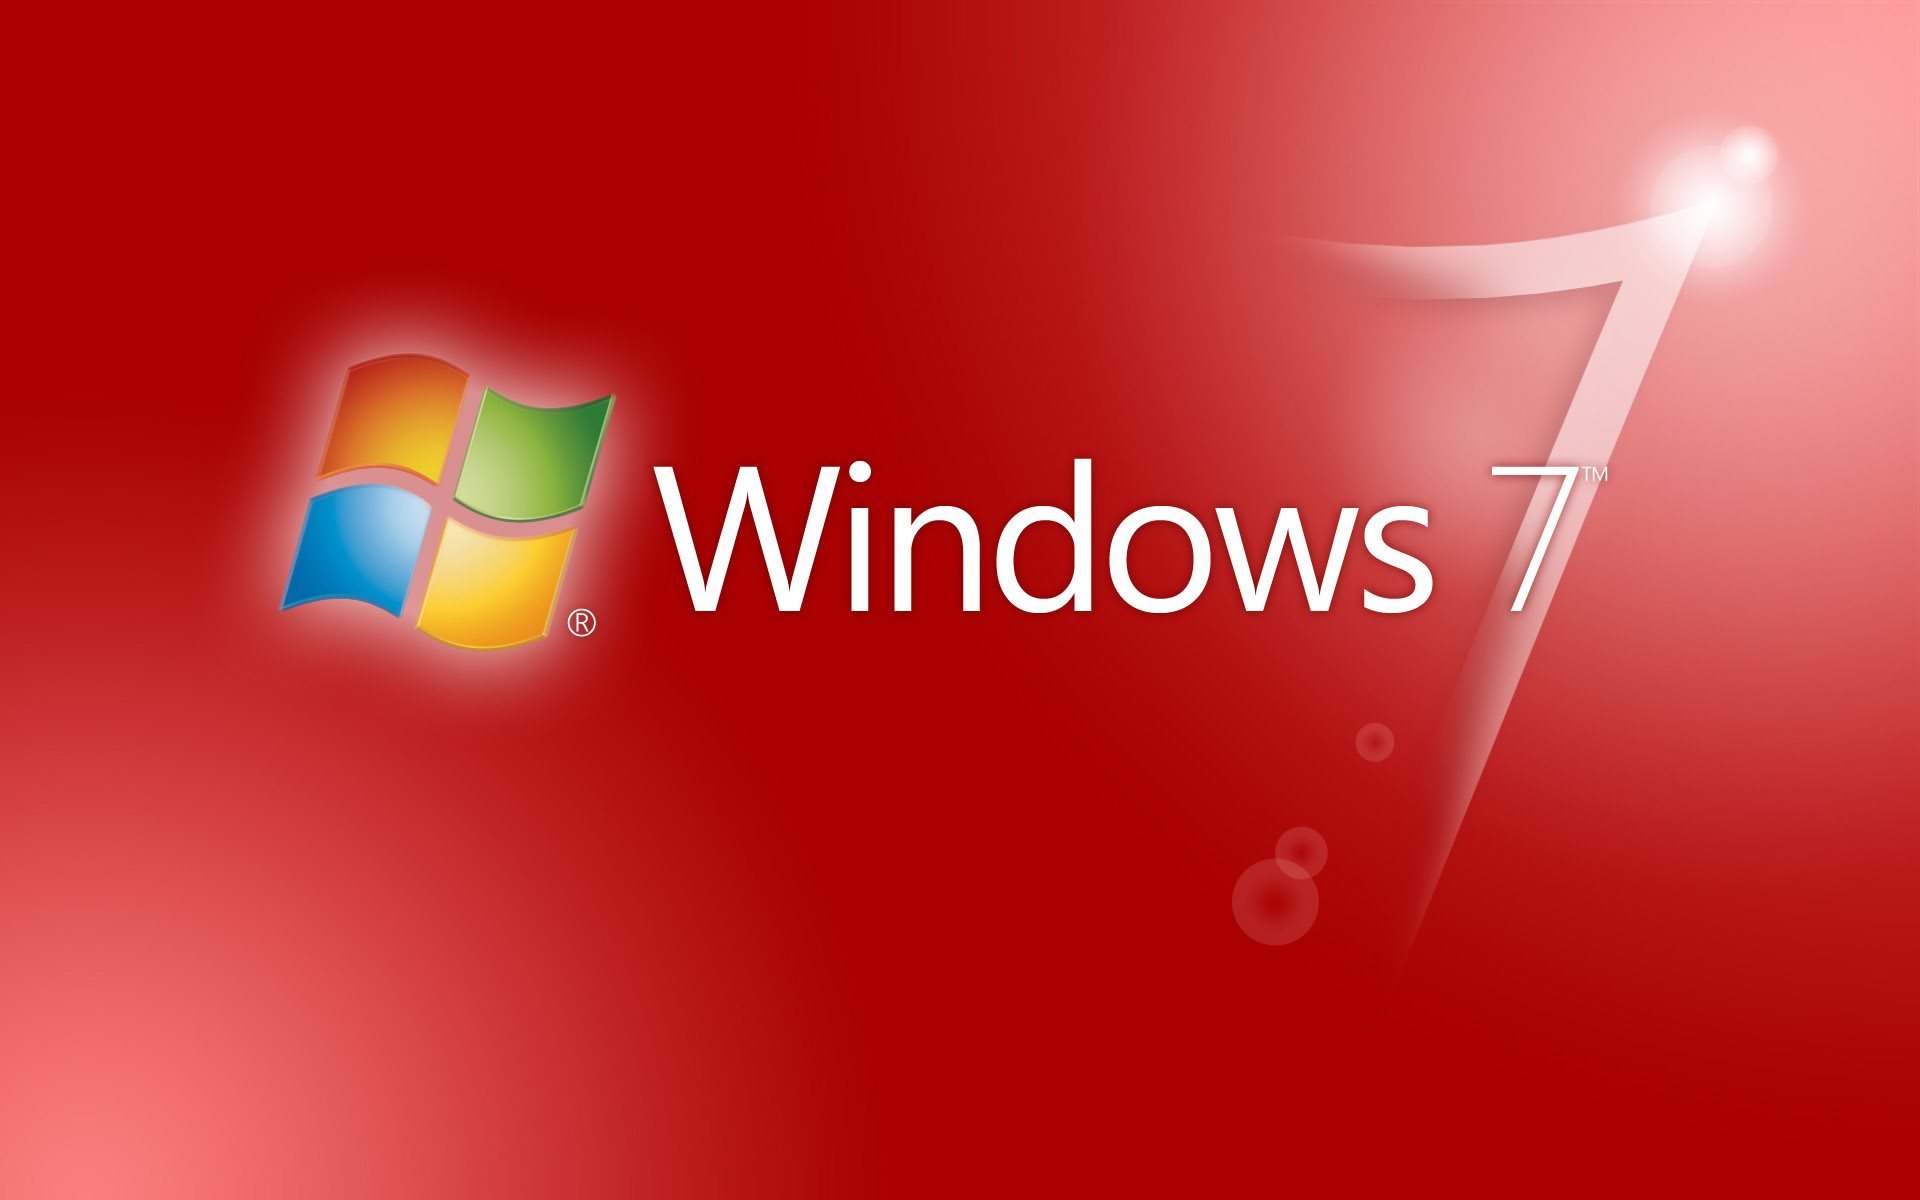 ダウンロード画像 セイバー 七 Windows7 Se7en Windows 赤の背景 画面の解像度 19x10 壁紙デスクトップ上